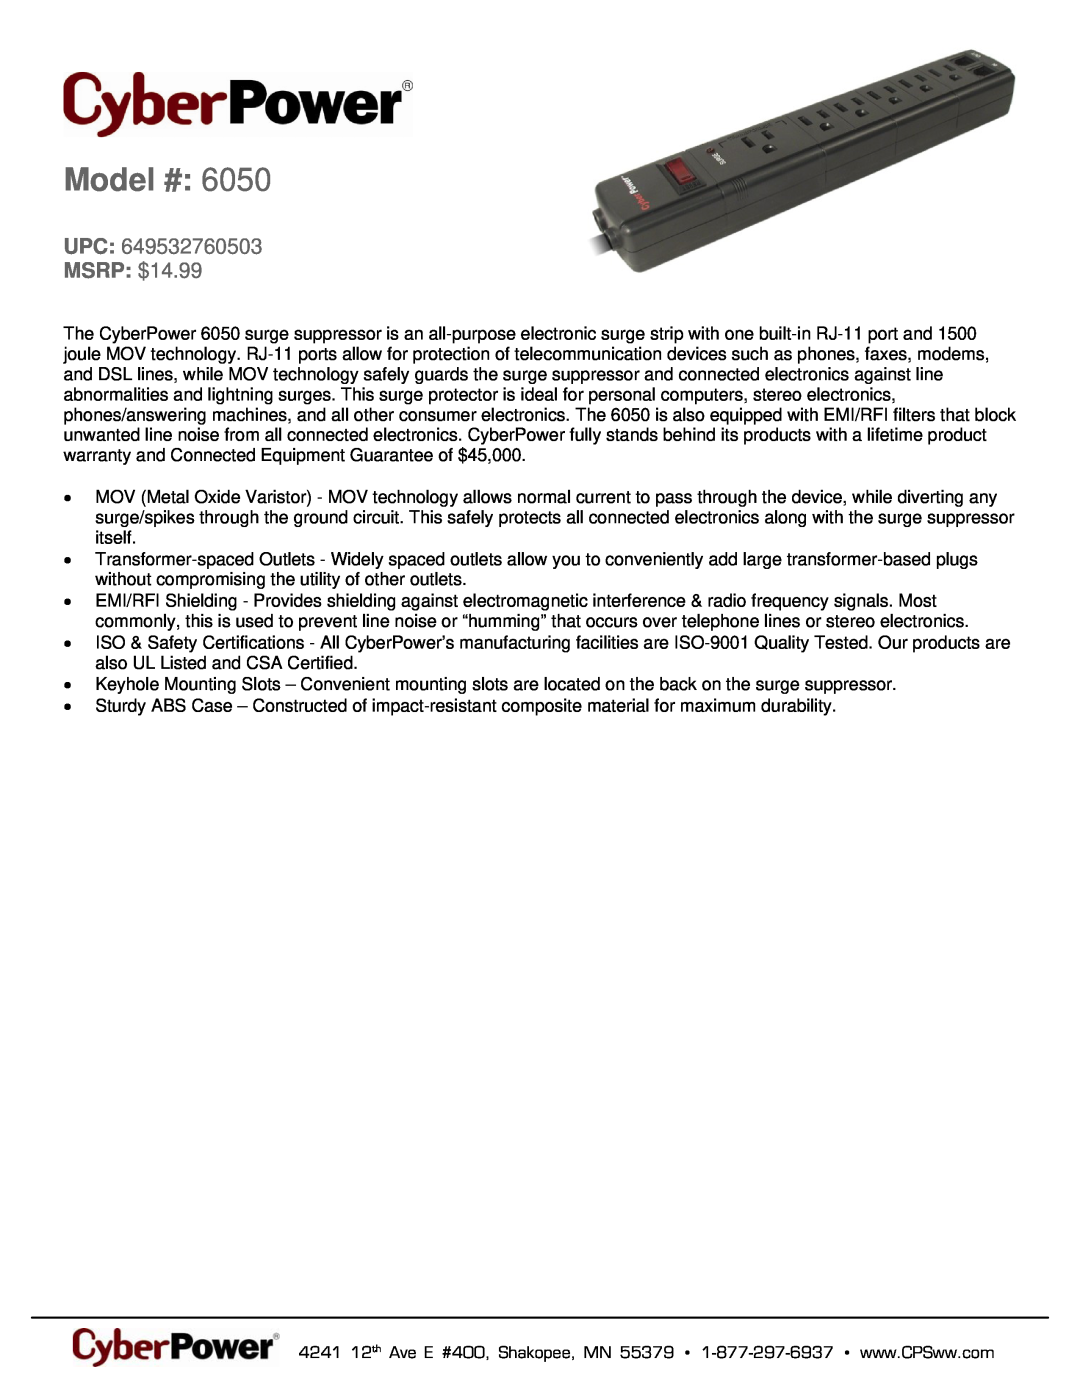 CyberPower Systems 6050 warranty Model #, MSRP $14.99 